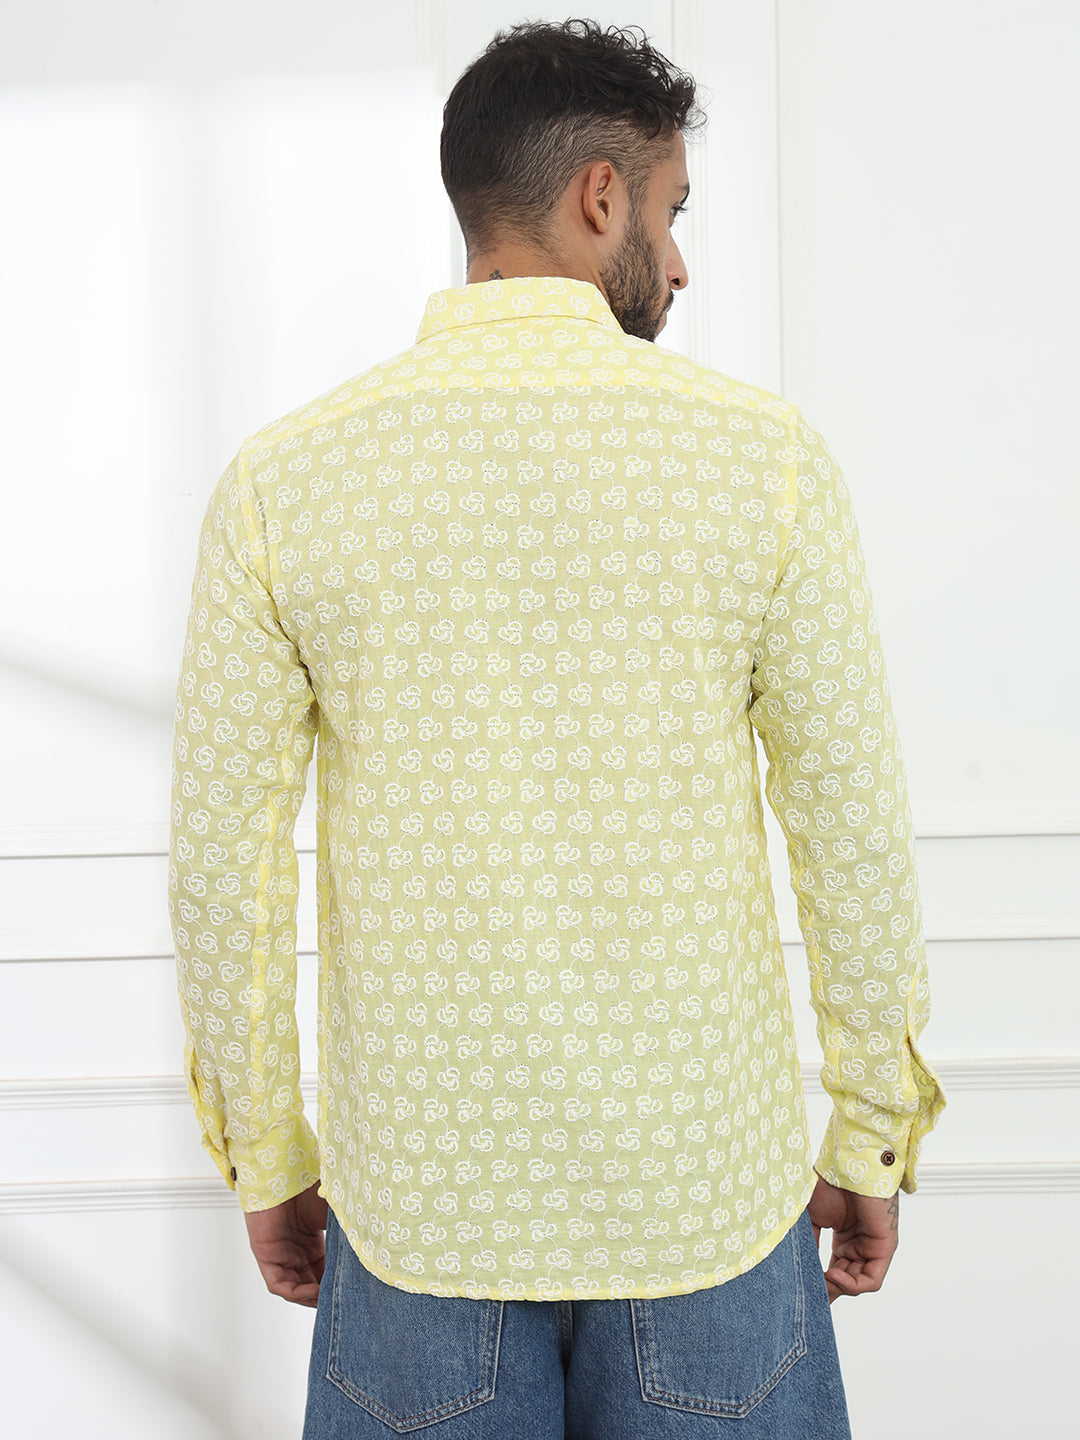 Laddoo Peela Yellow Firangi Yarn Super Soft Full Sleeves Chikankari schiffli Embroided Men's Shirt